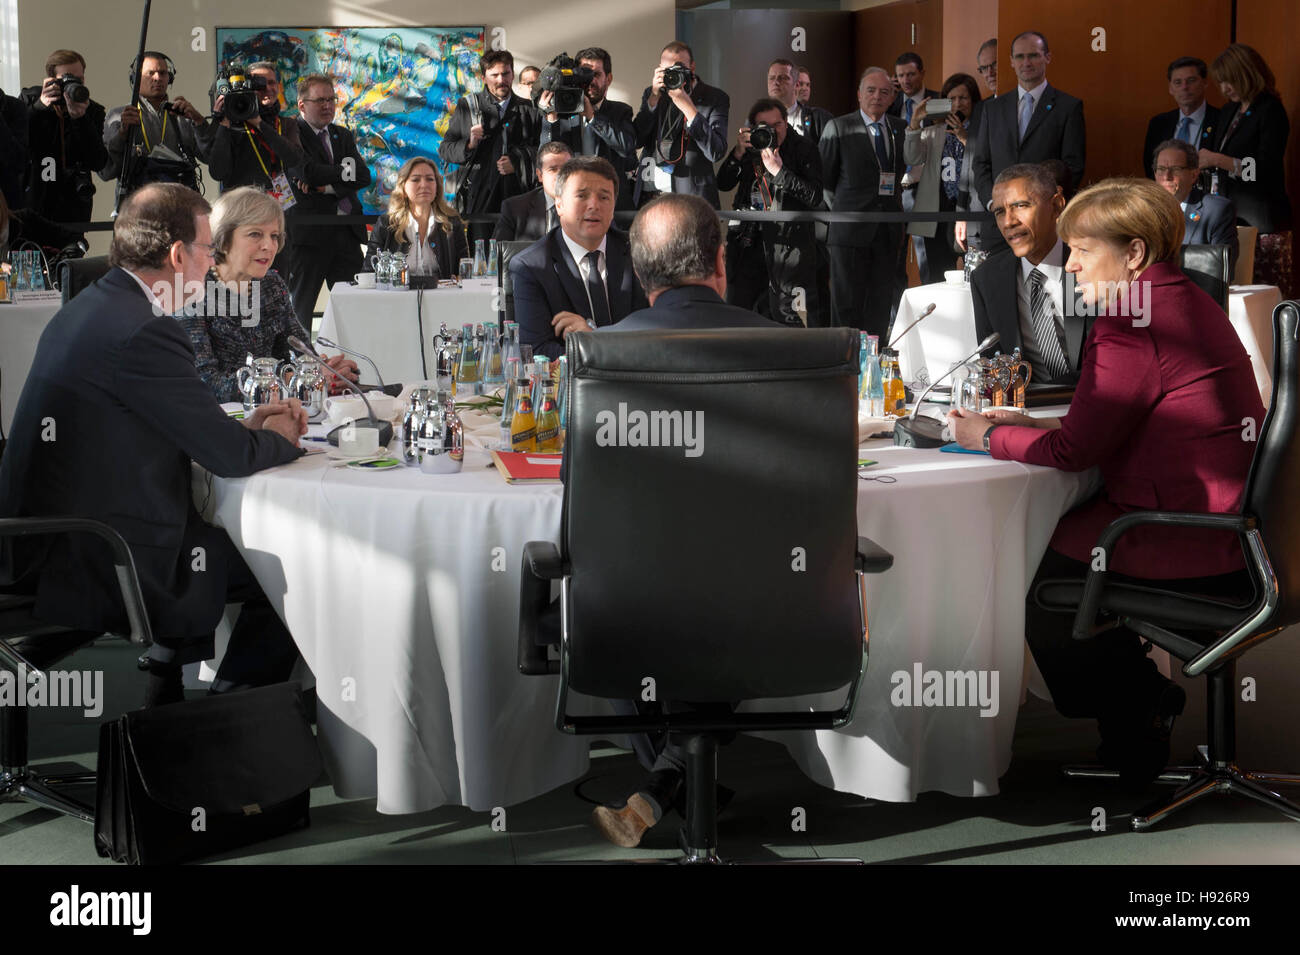 Premier ministre Theresa peut parle avec la Chancelière allemande Angela Merkel, le président américain Barack Obama, le président français, François Hollande, le premier ministre italien, Matteo Renzi, et le premier ministre Espagnol Mariano Rajoy lors d'une réunion à Berlin avec les dirigeants de l'USA, Allemagne, France, Italie et Espagne. Banque D'Images